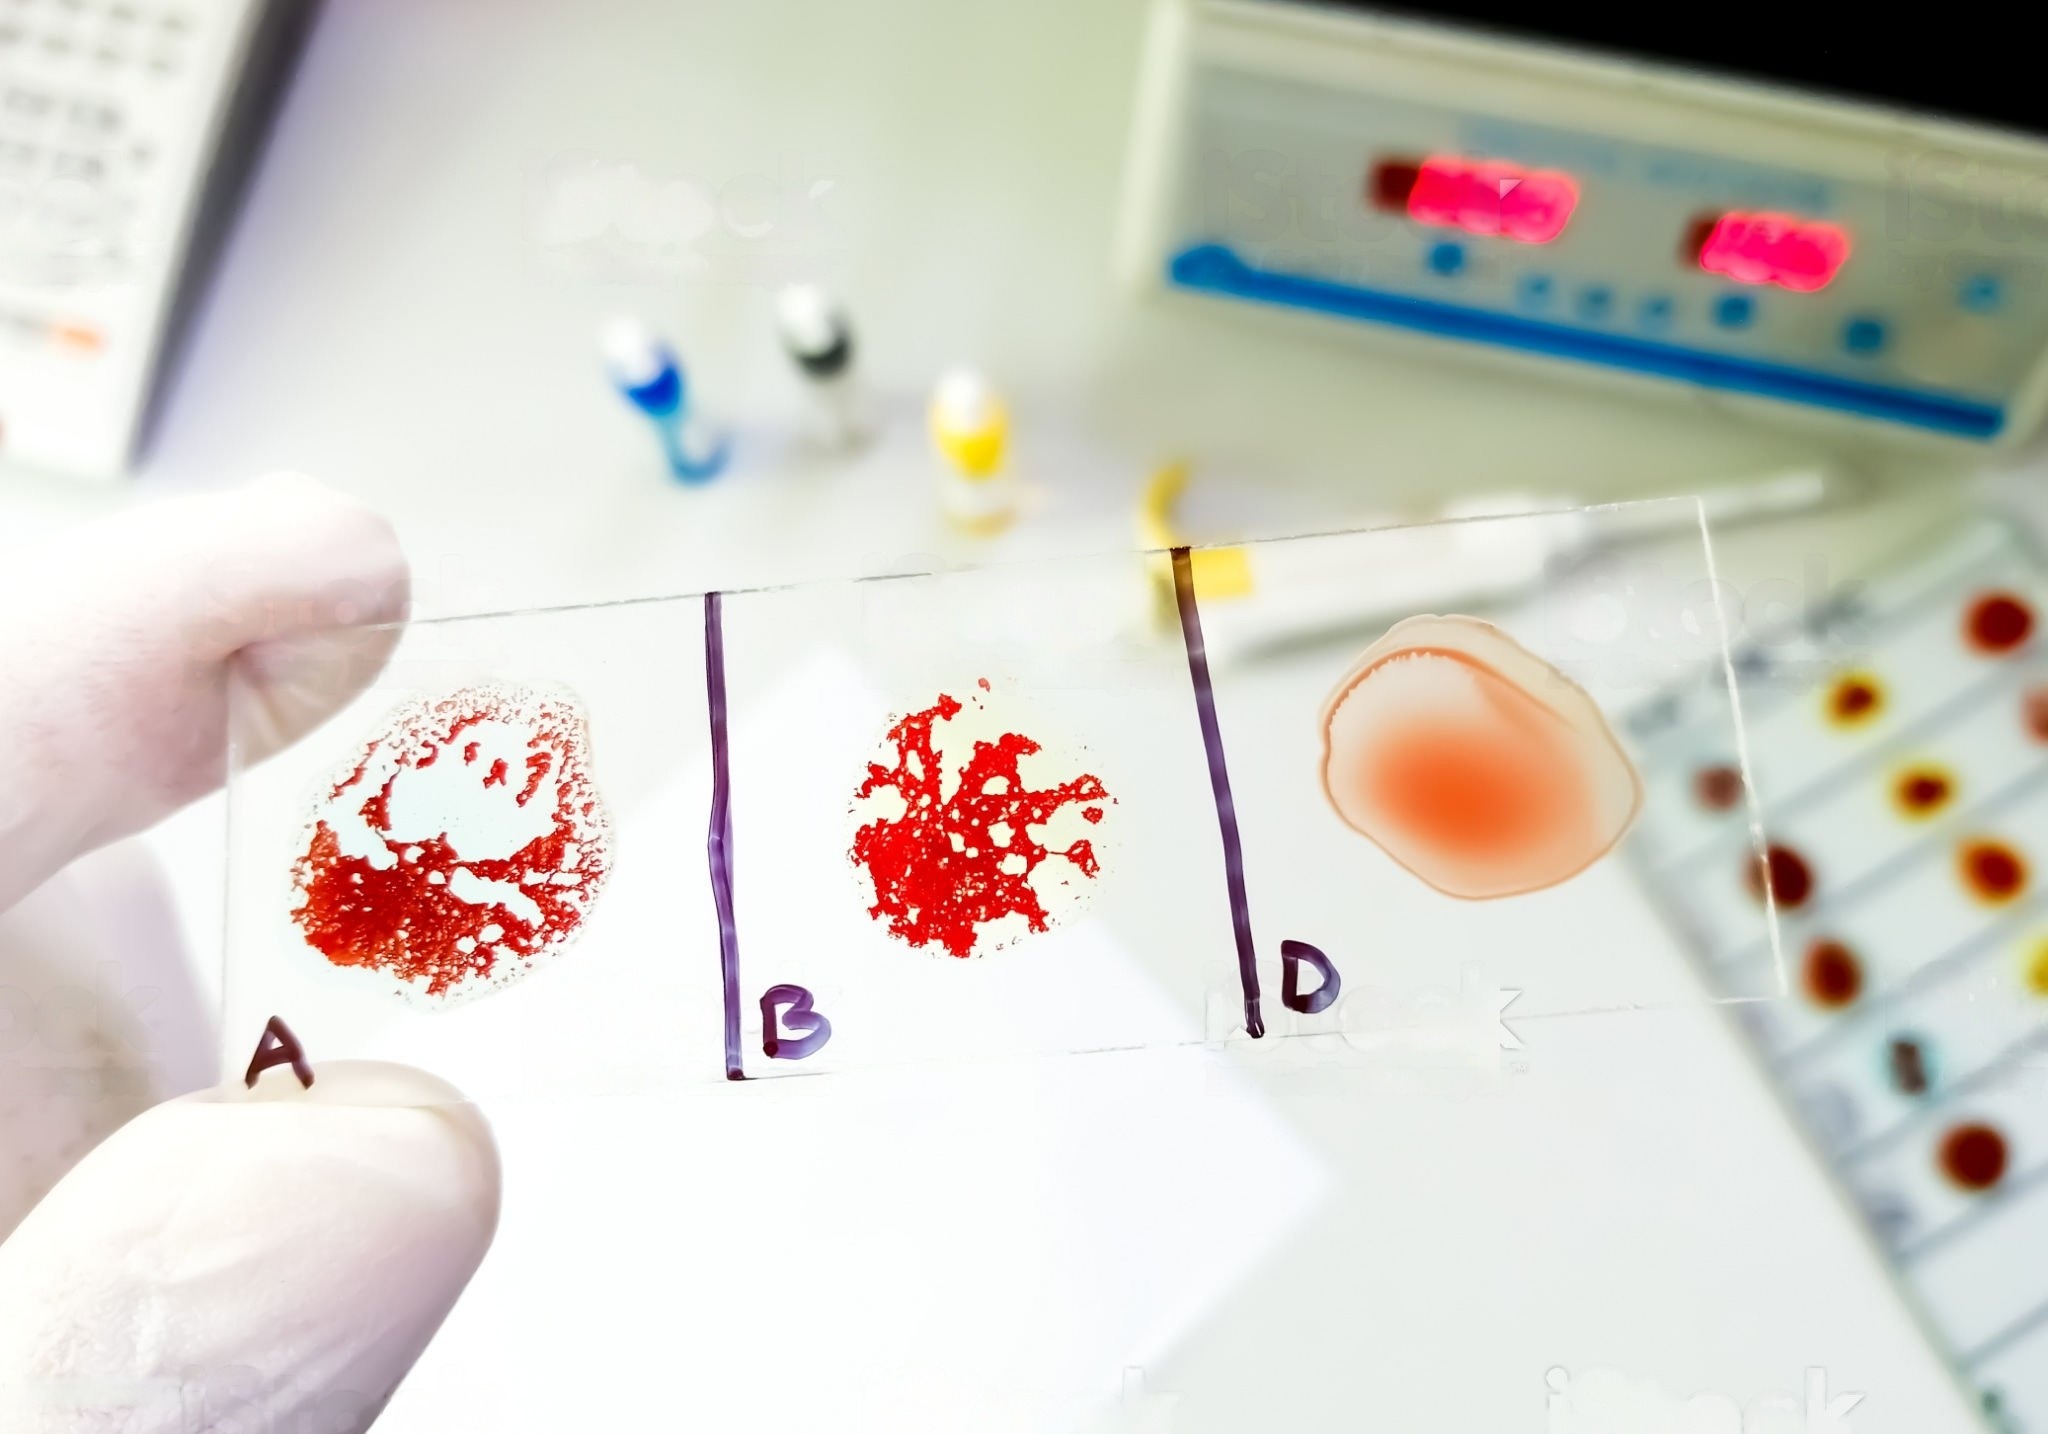 Gambar ilustratif tangan seorang dokter memegang tabung sampel darah dengan label yang menunjukkan berbagai golongan darah, digunakan untuk menentukan jenis darah pasien dalam konteks medis